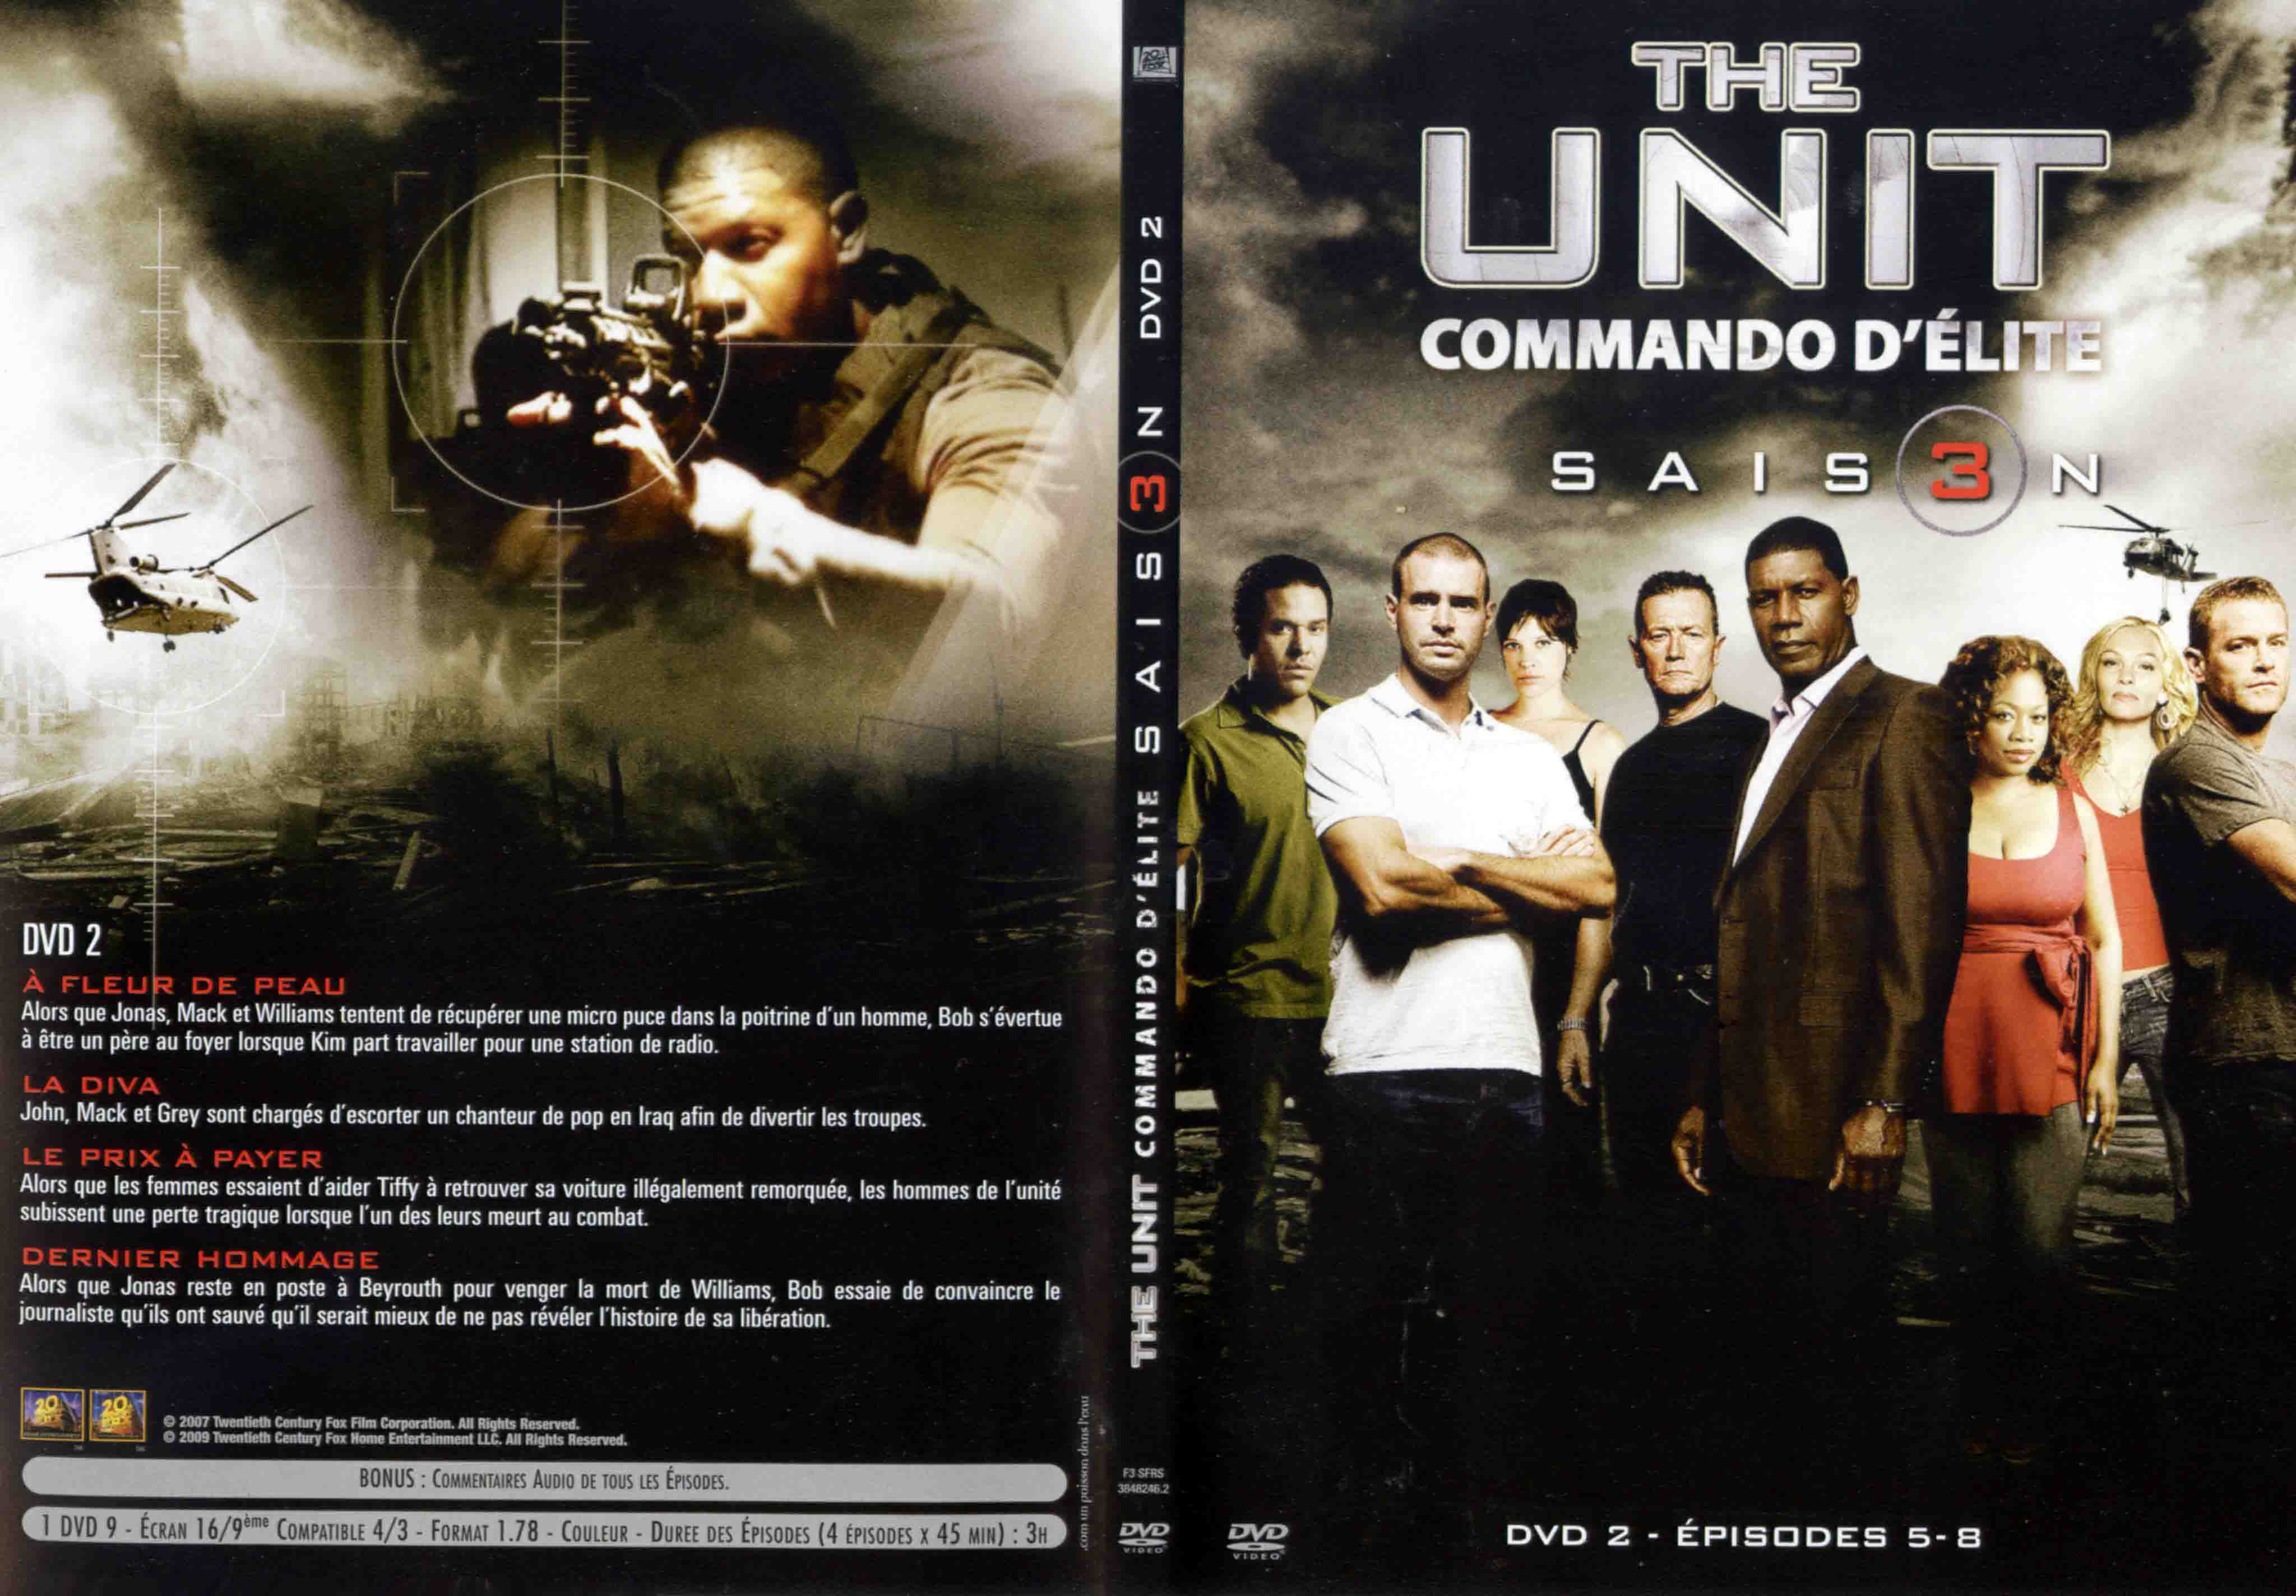 Jaquette DVD The unit saison 3 DVD 2